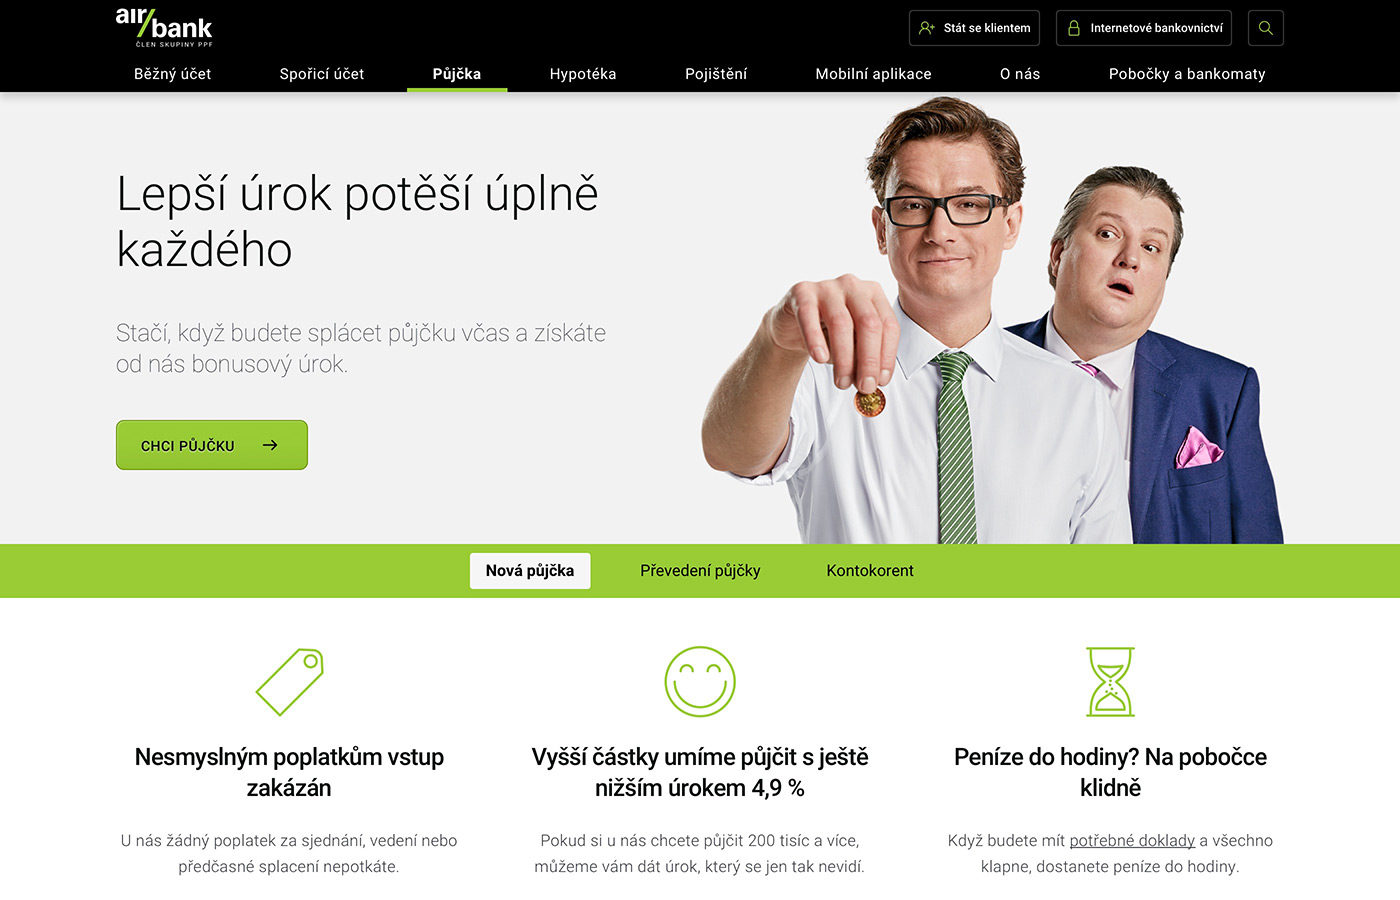 Webové stránky https://www.airbank.cz/produkty/pujcka/